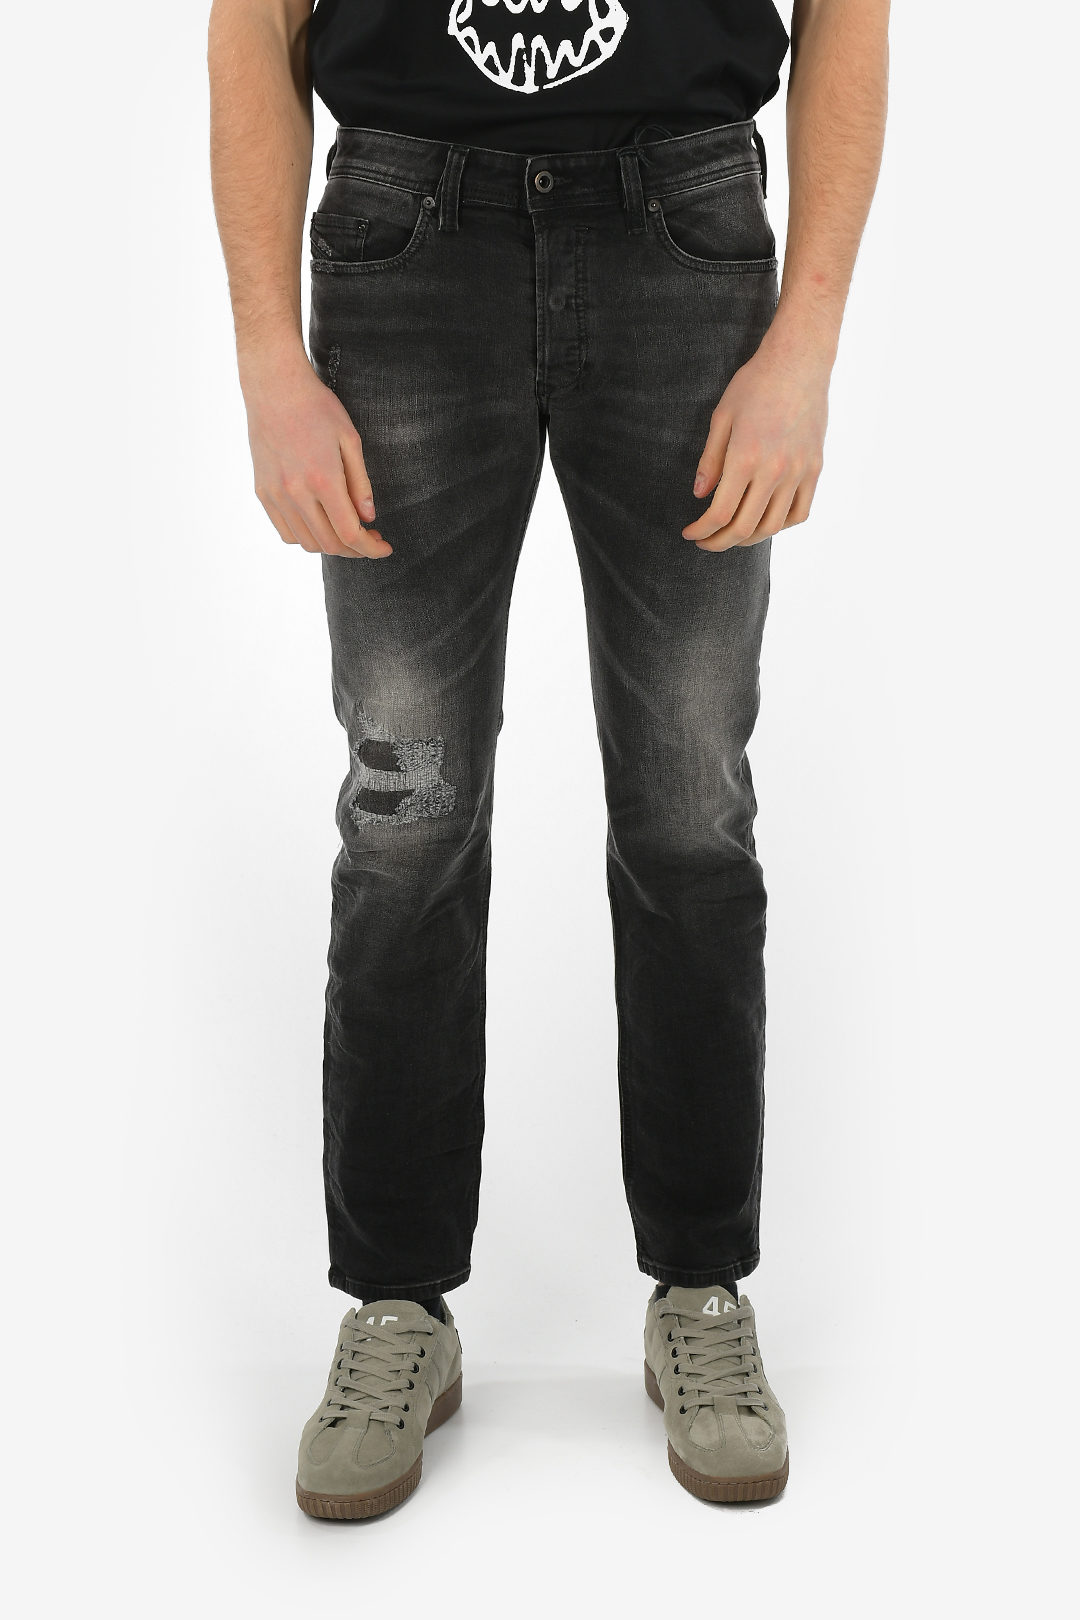 Diesel 19cm Distressed SAFADO-R Jeans L30 men - Glamood Outlet